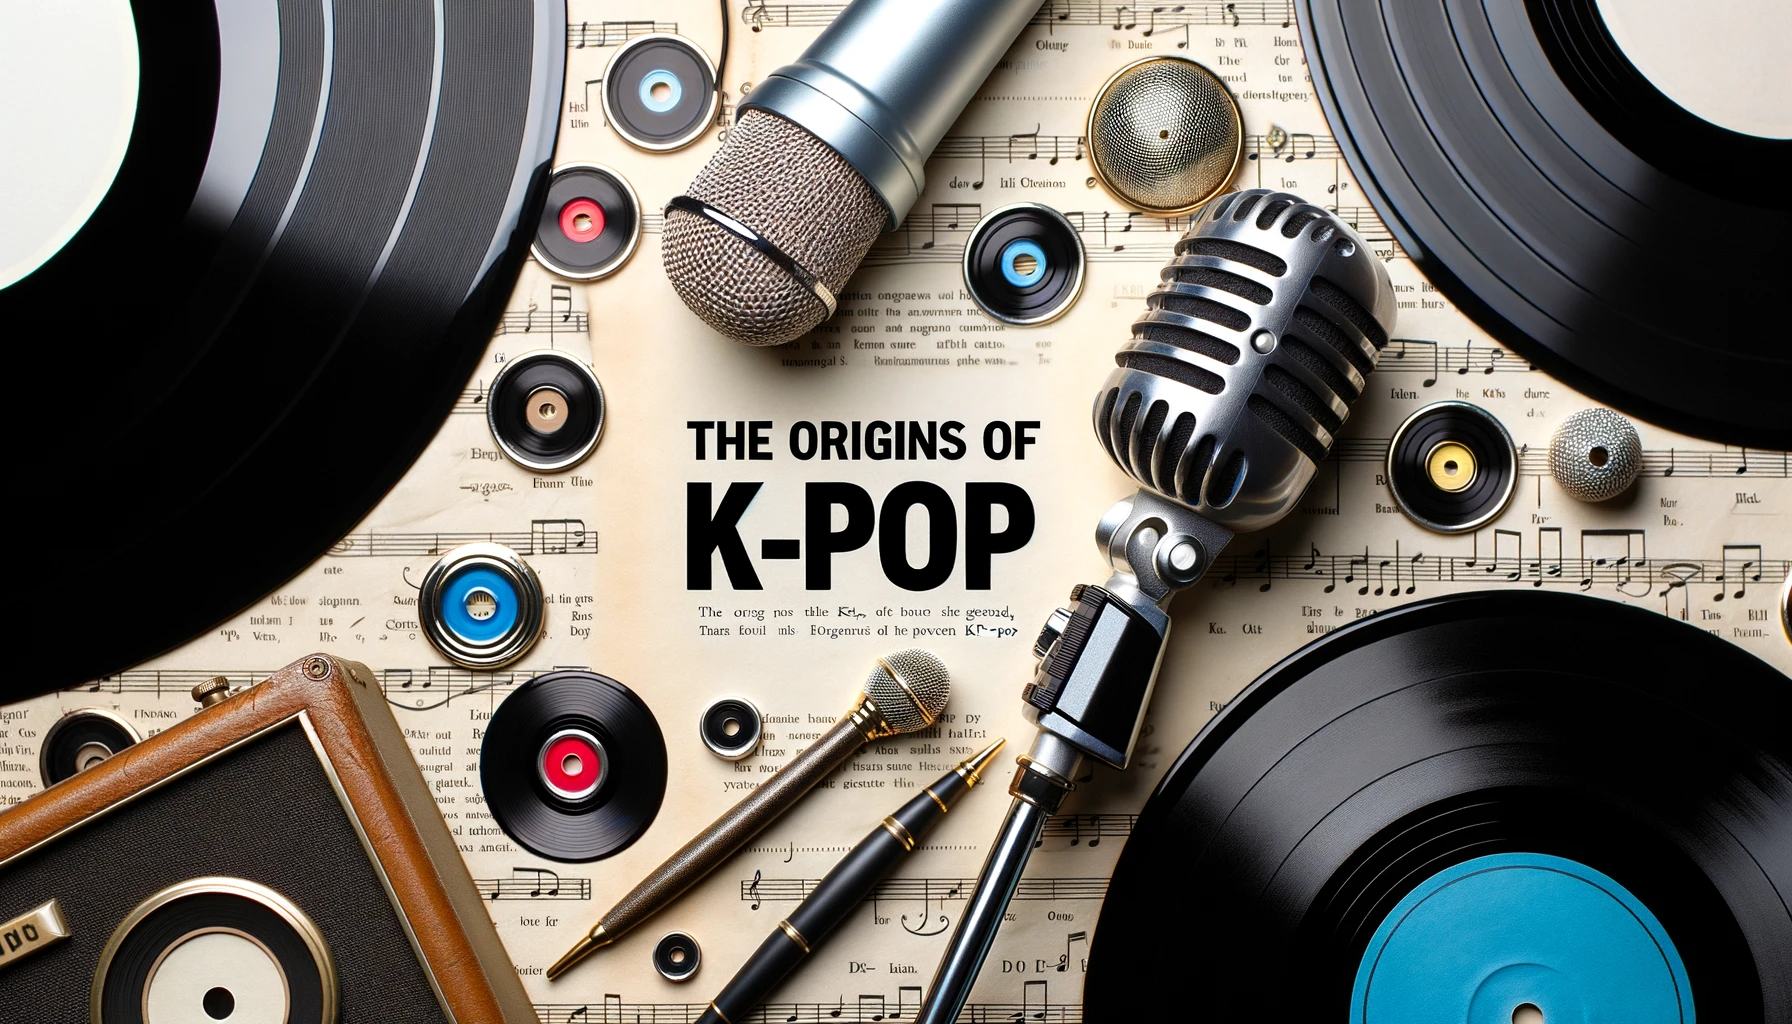 The Origins of K-POP